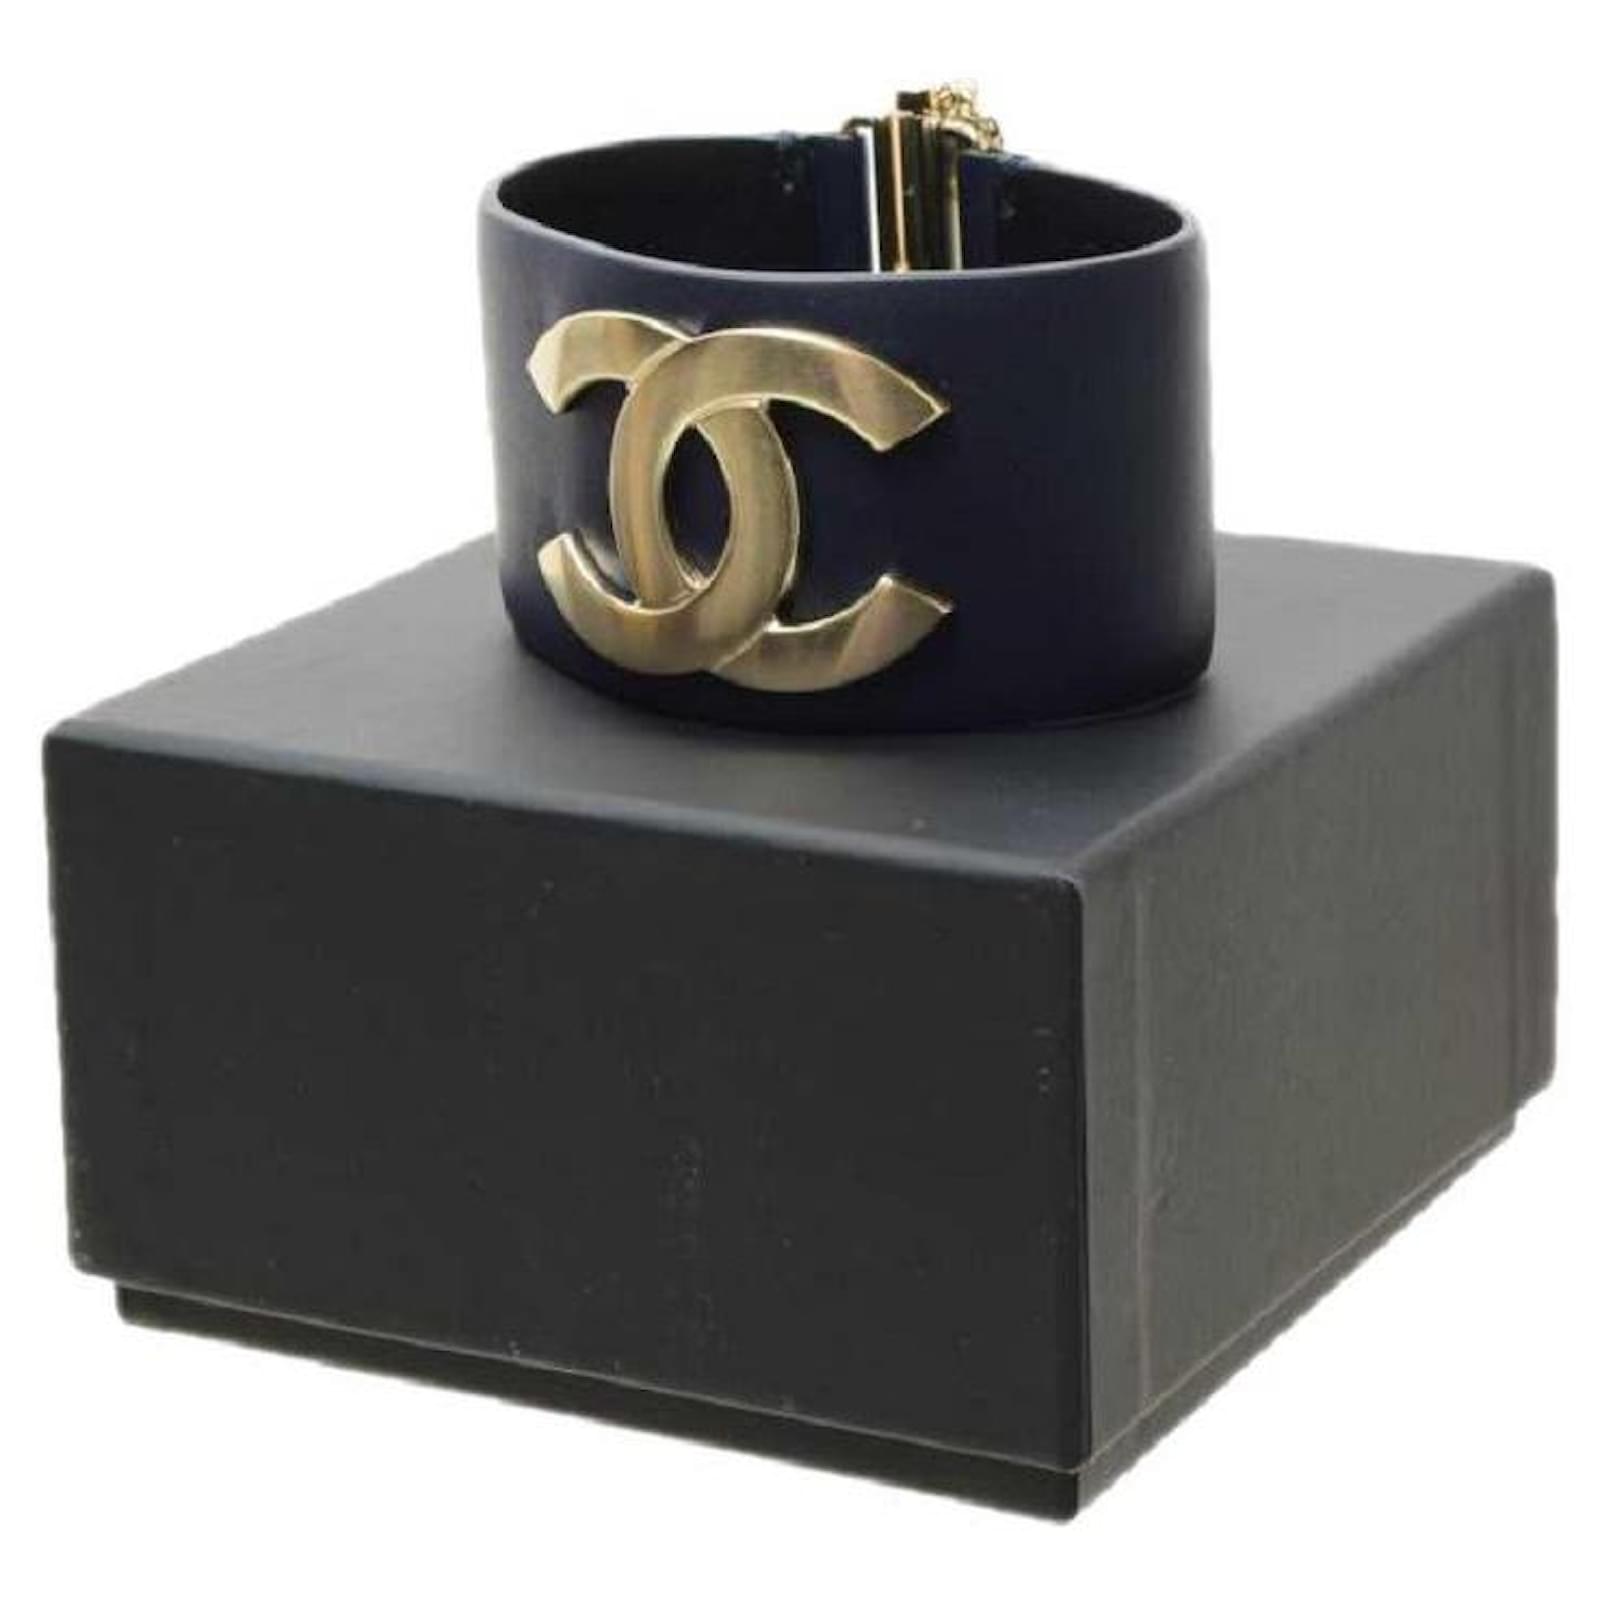 Chanel bracelet défilé